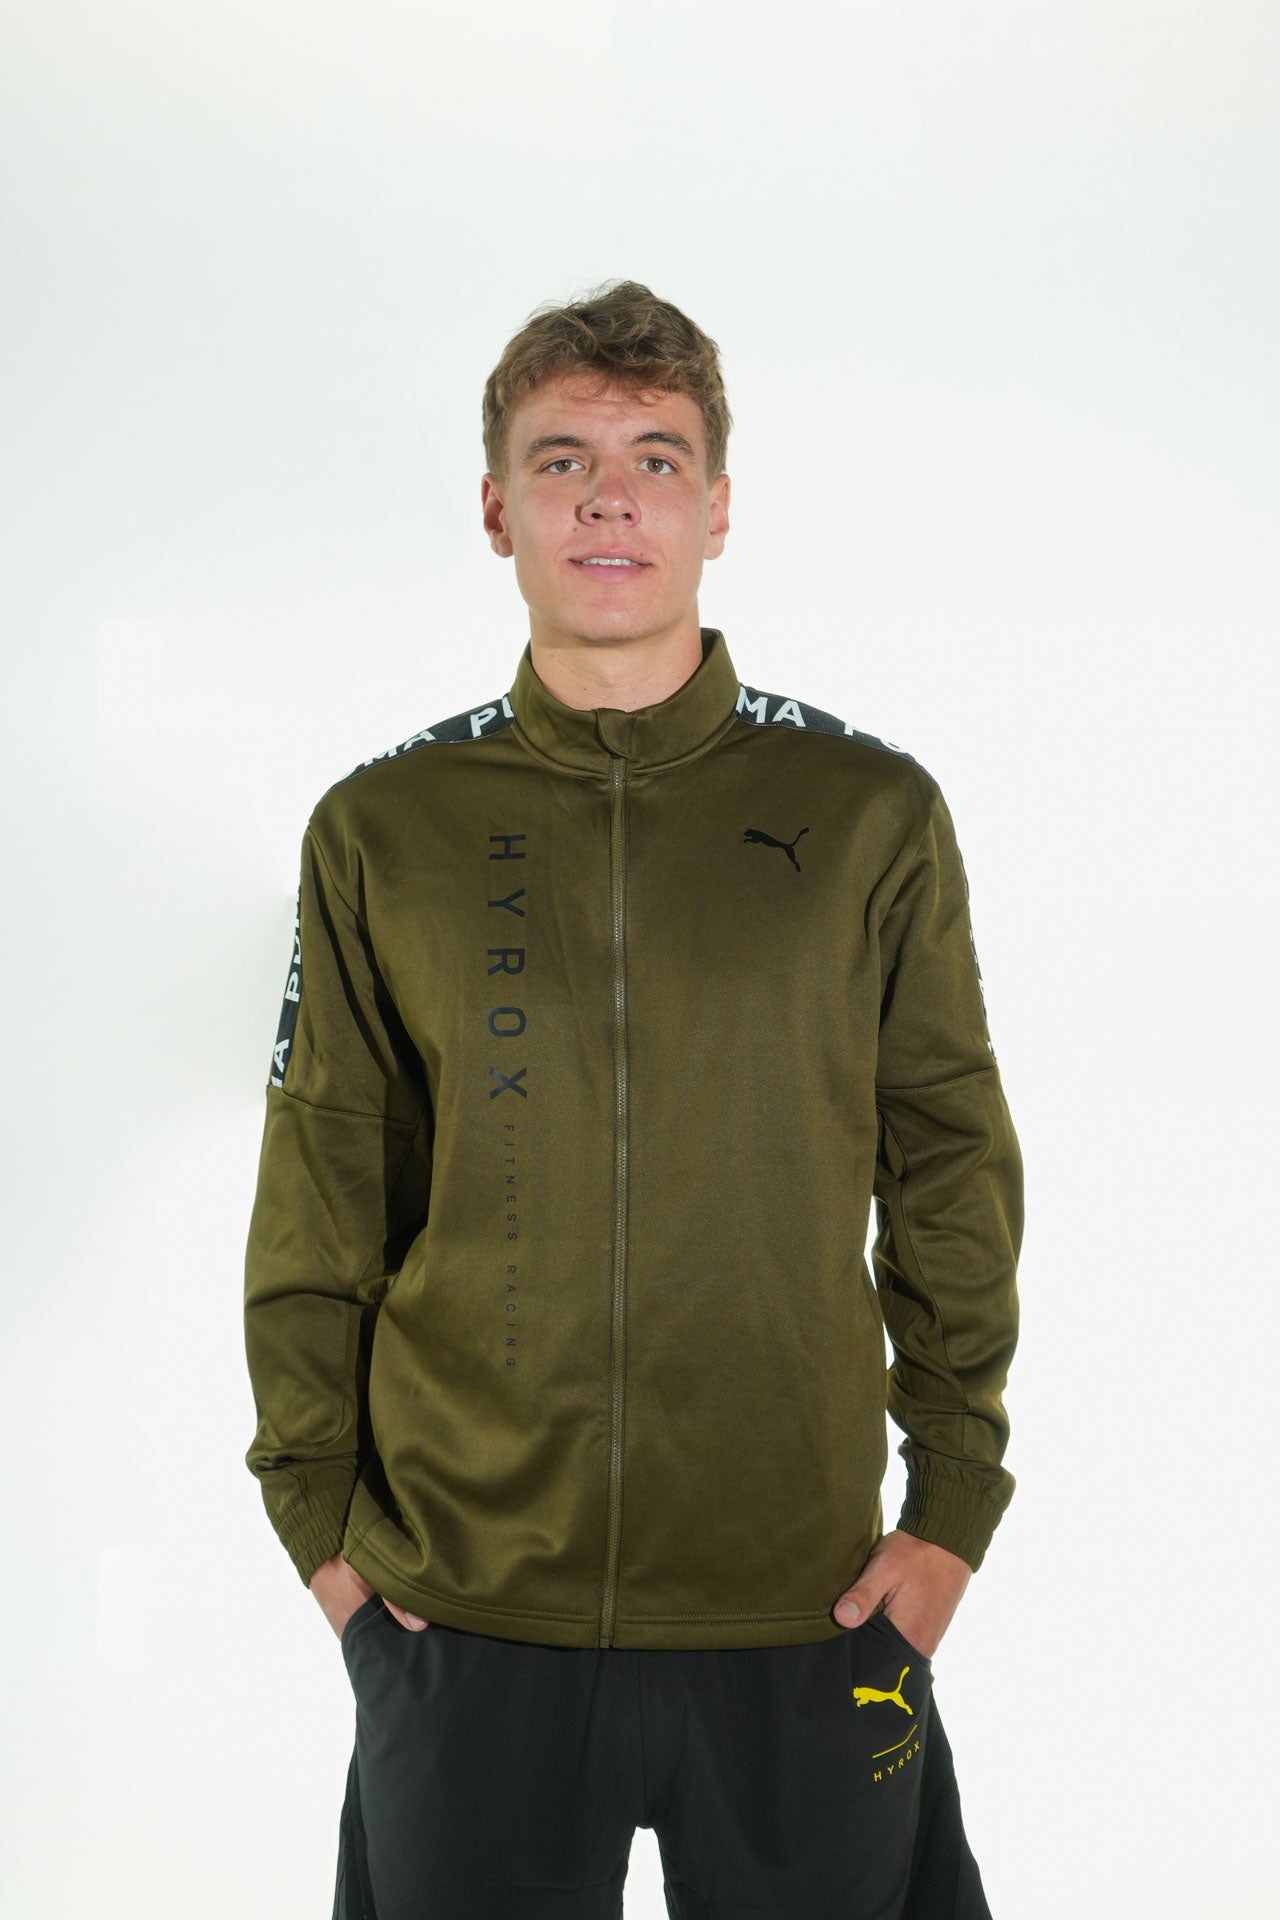 HYROX|PUMA FIT PWR Fleece FZ Jacket - Green